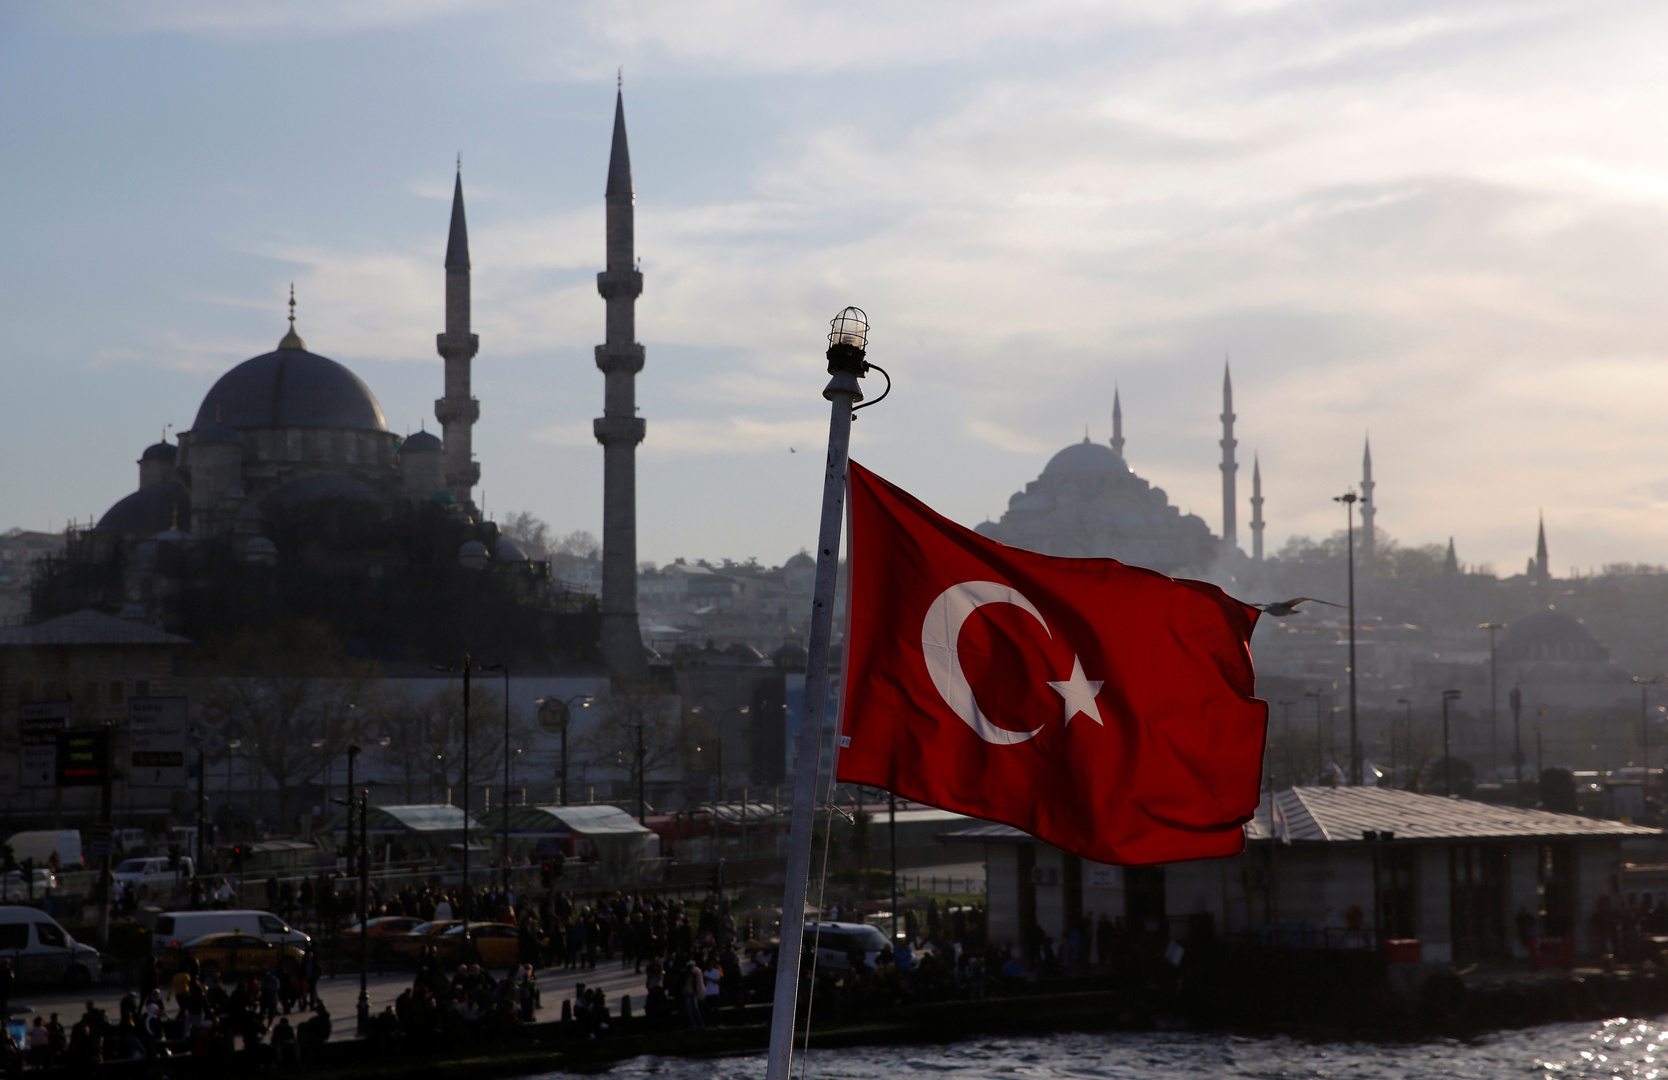 تركيا تجلي طلبتها من 8 دول منها 3 عربية بسبب كورونا